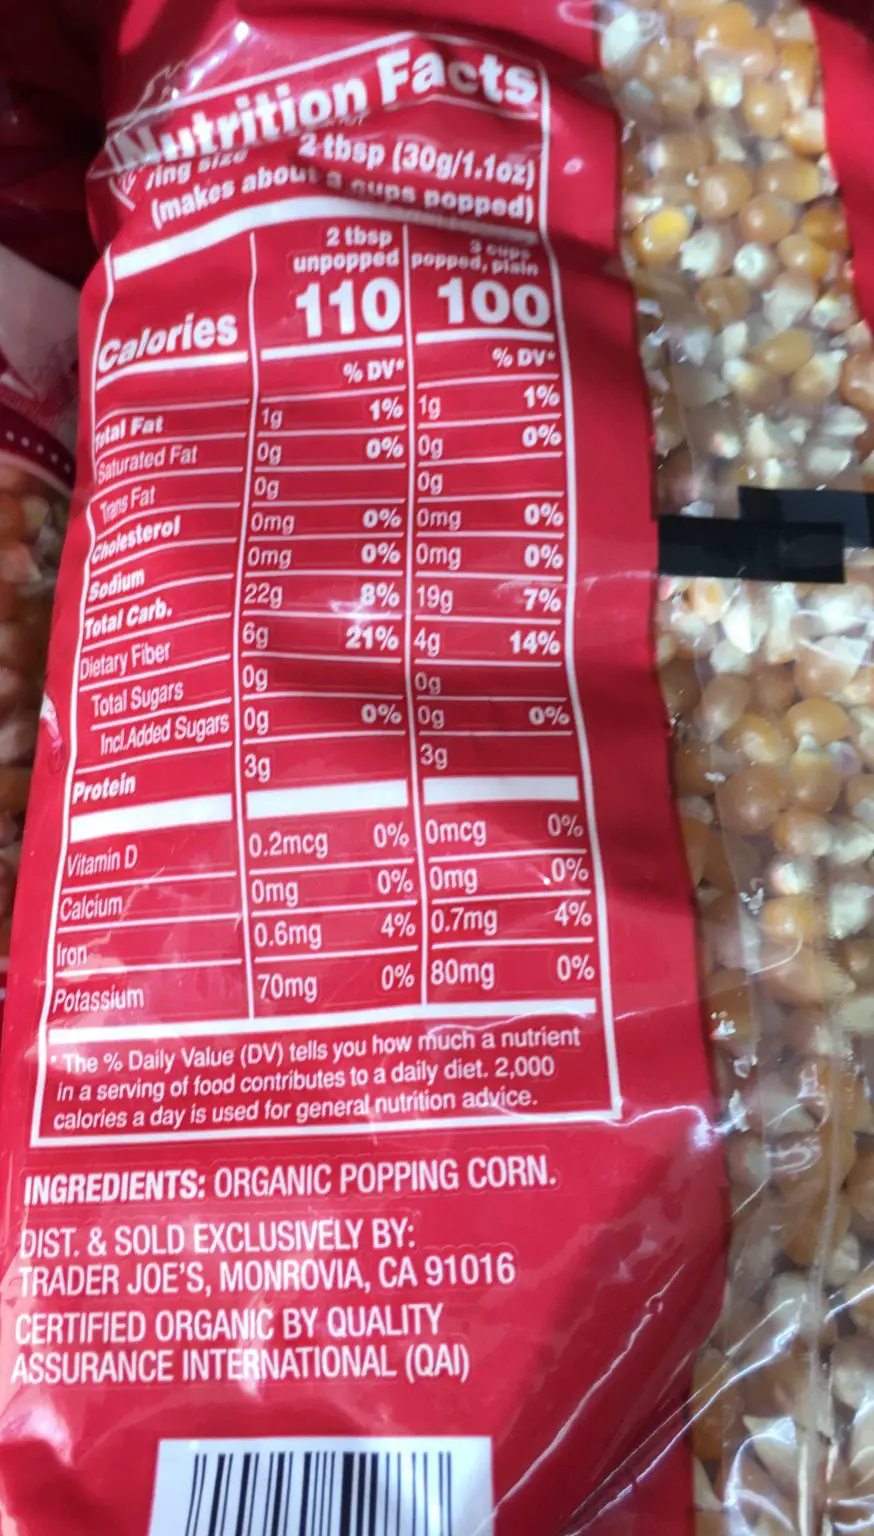 Trader Joe's Popcorn, Organic Whole Grain - Trader Joe's Reviews